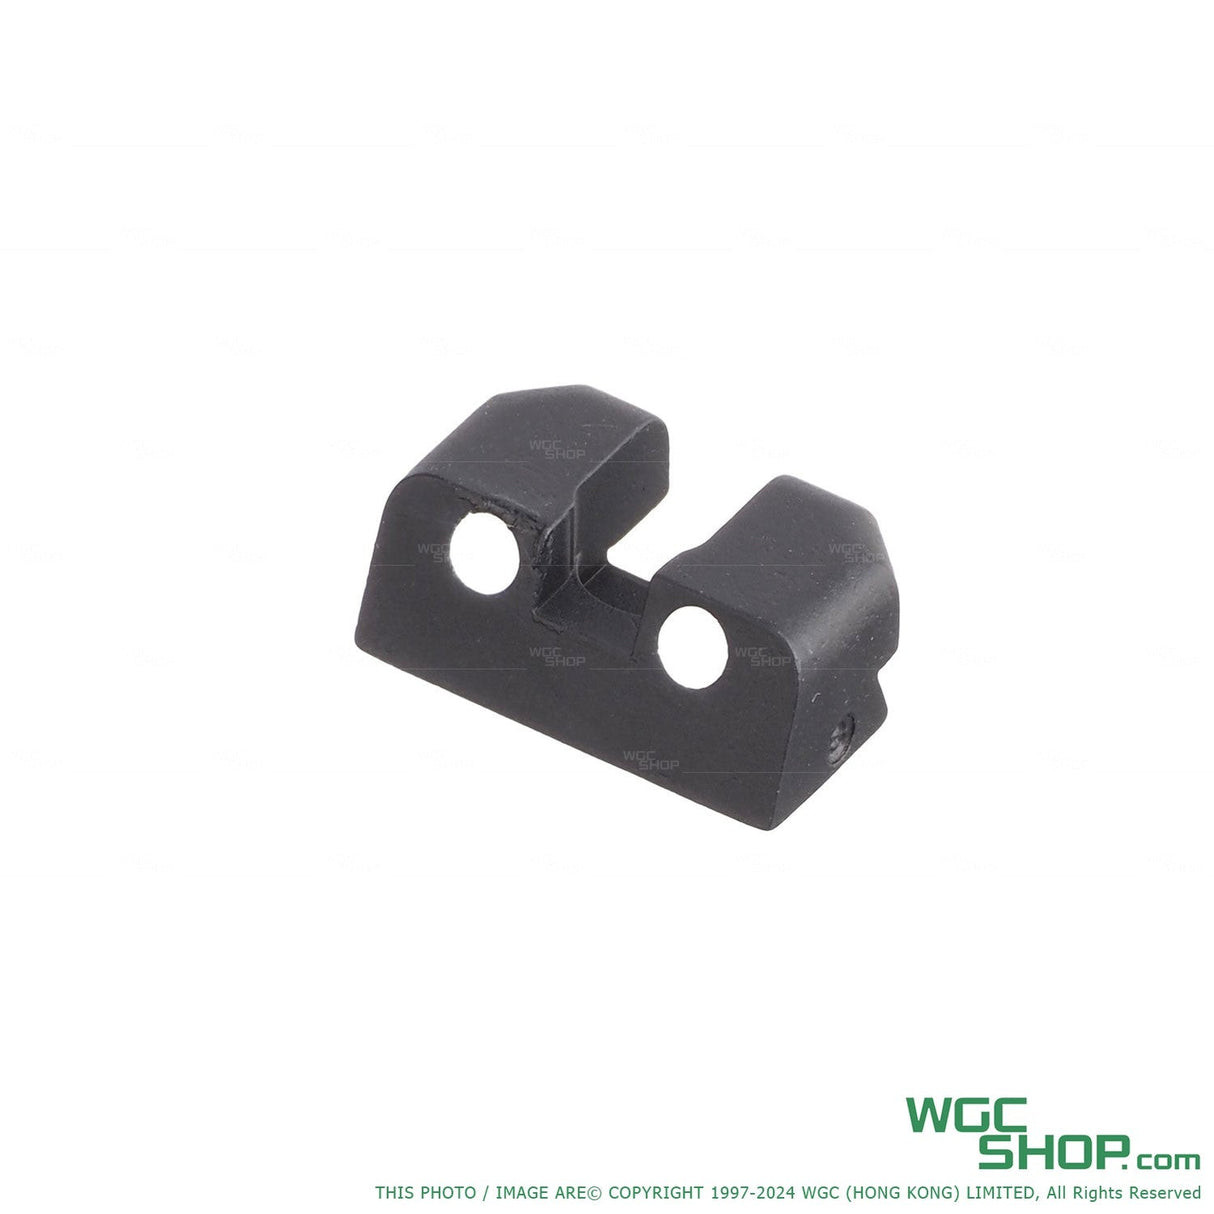 VFC Original Parts - MK25 GBB Rear Sight ( VGCJRST110 / 01-04 )